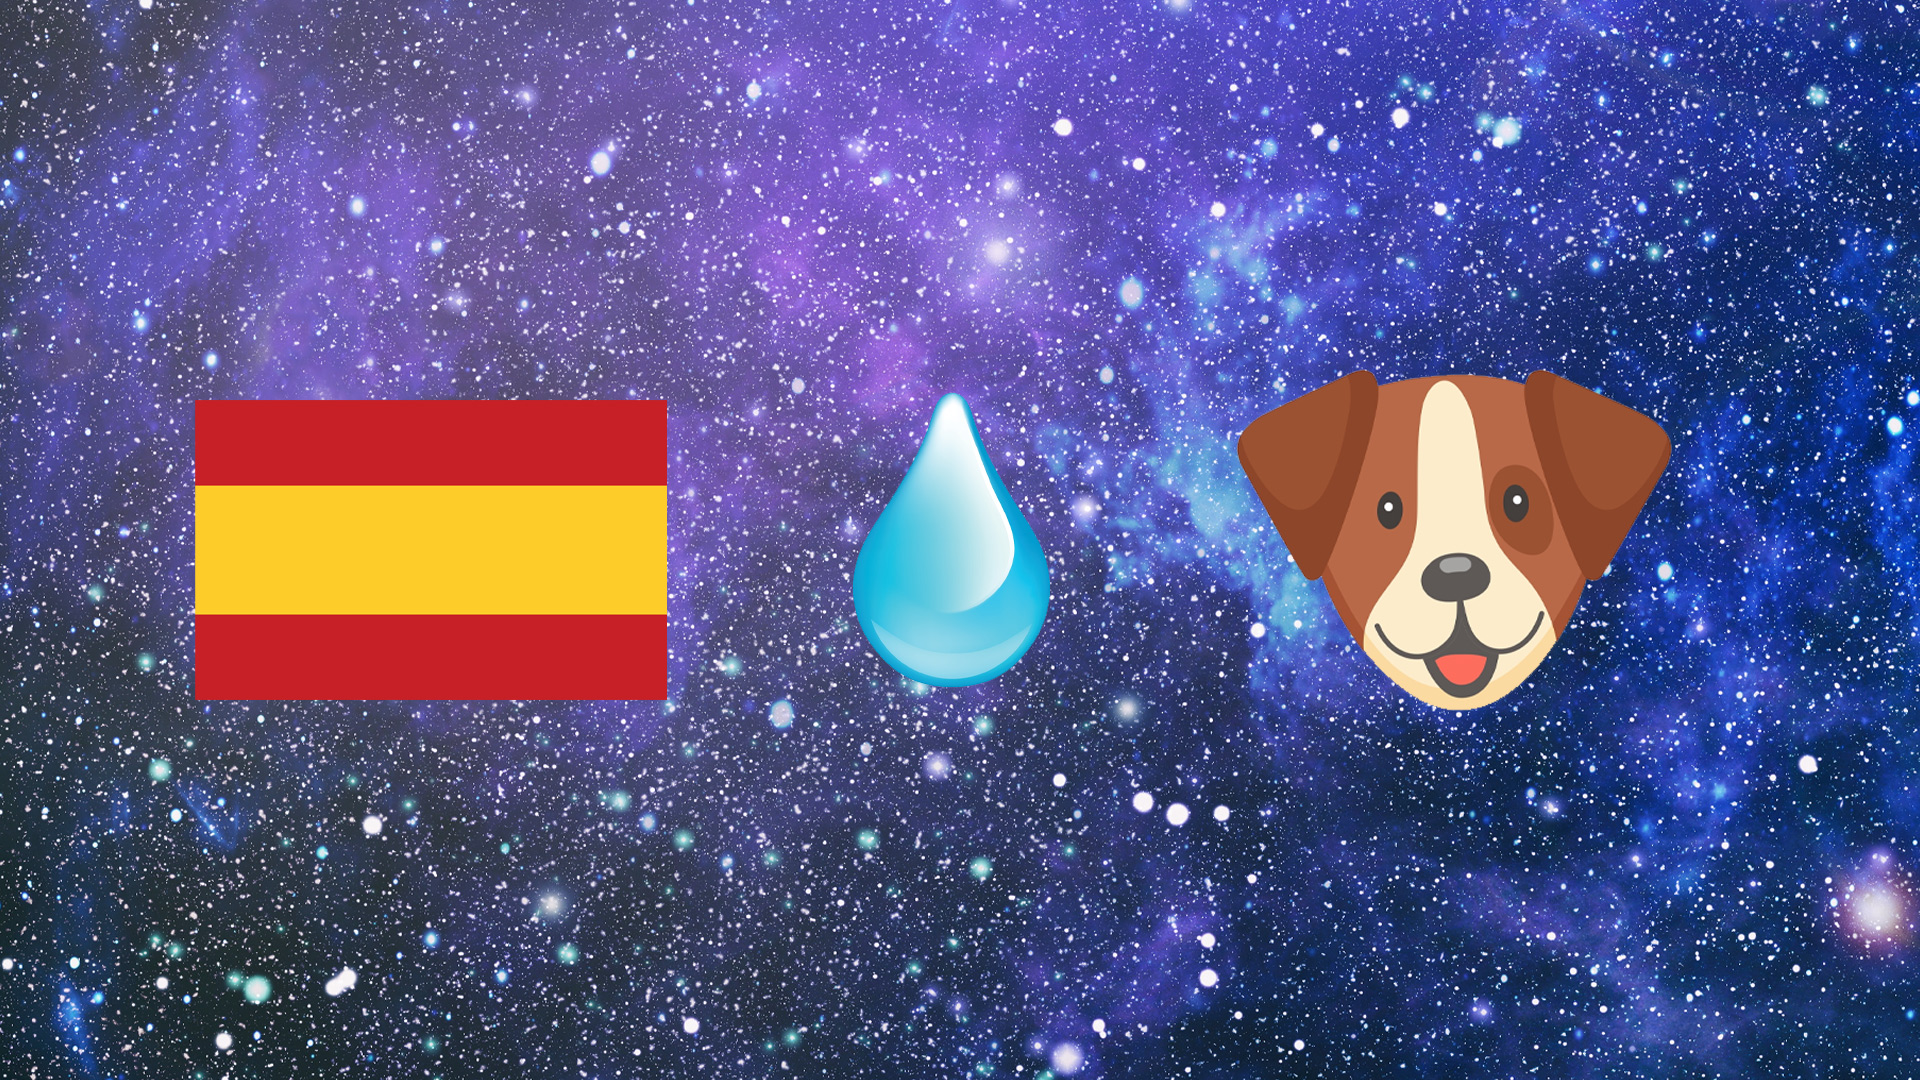 Spain flag, drop of water, dog emoji